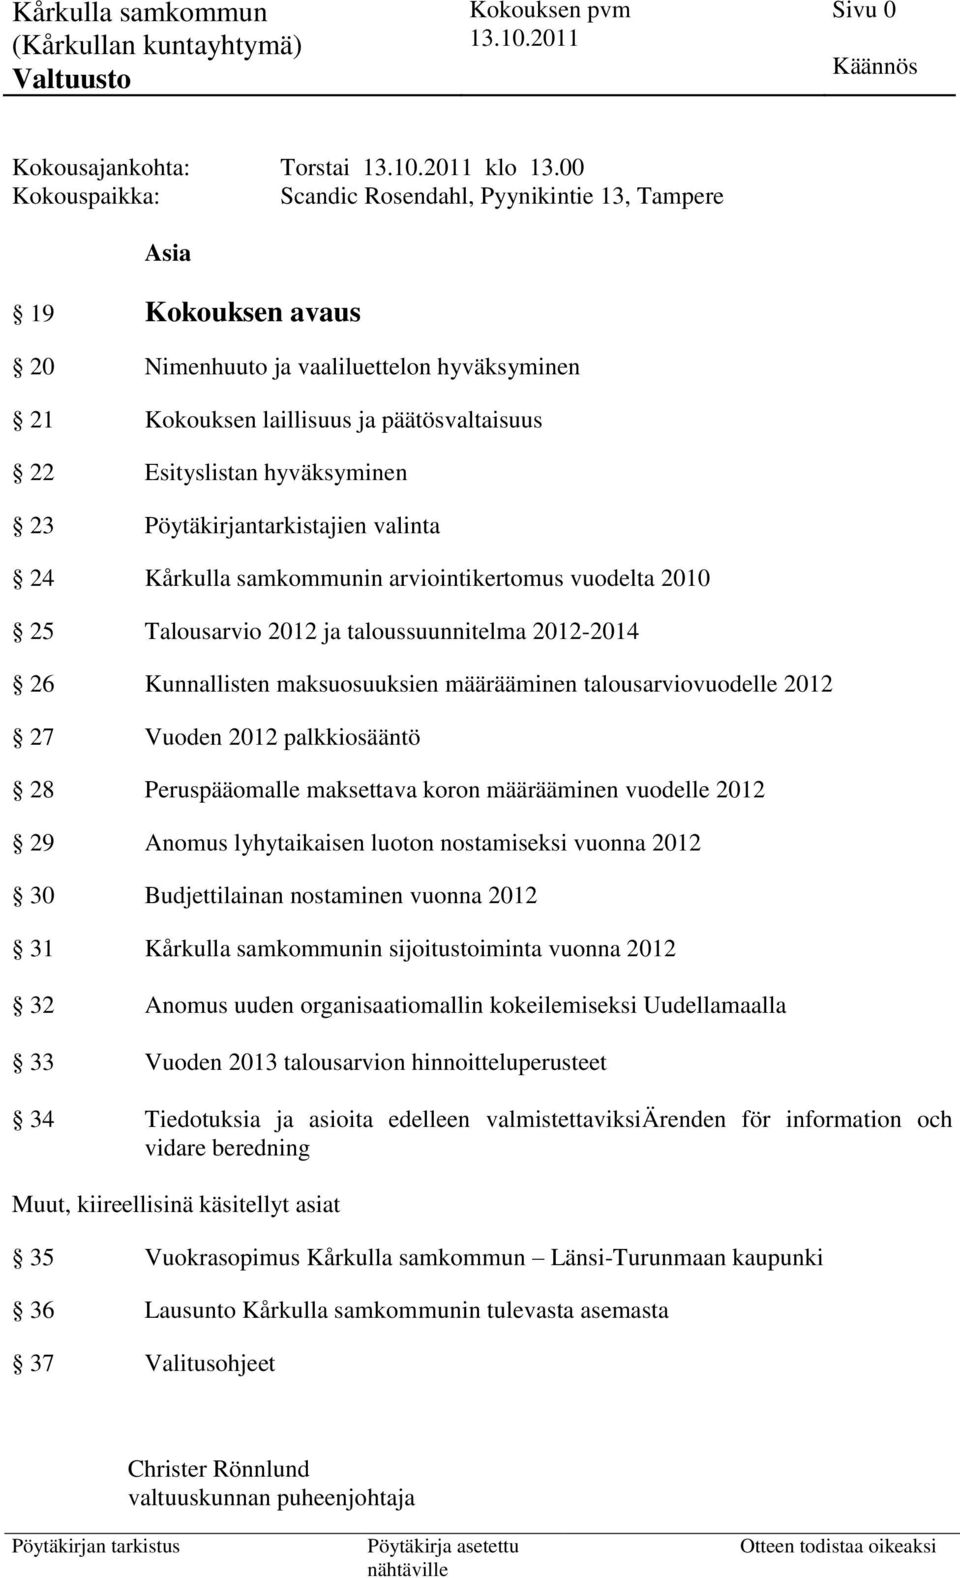 hyväksyminen 23 Pöytäkirjantarkistajien valinta 24 Kårkulla samkommunin arviointikertomus vuodelta 2010 25 Talousarvio 2012 ja taloussuunnitelma 2012-2014 26 Kunnallisten maksuosuuksien määrääminen